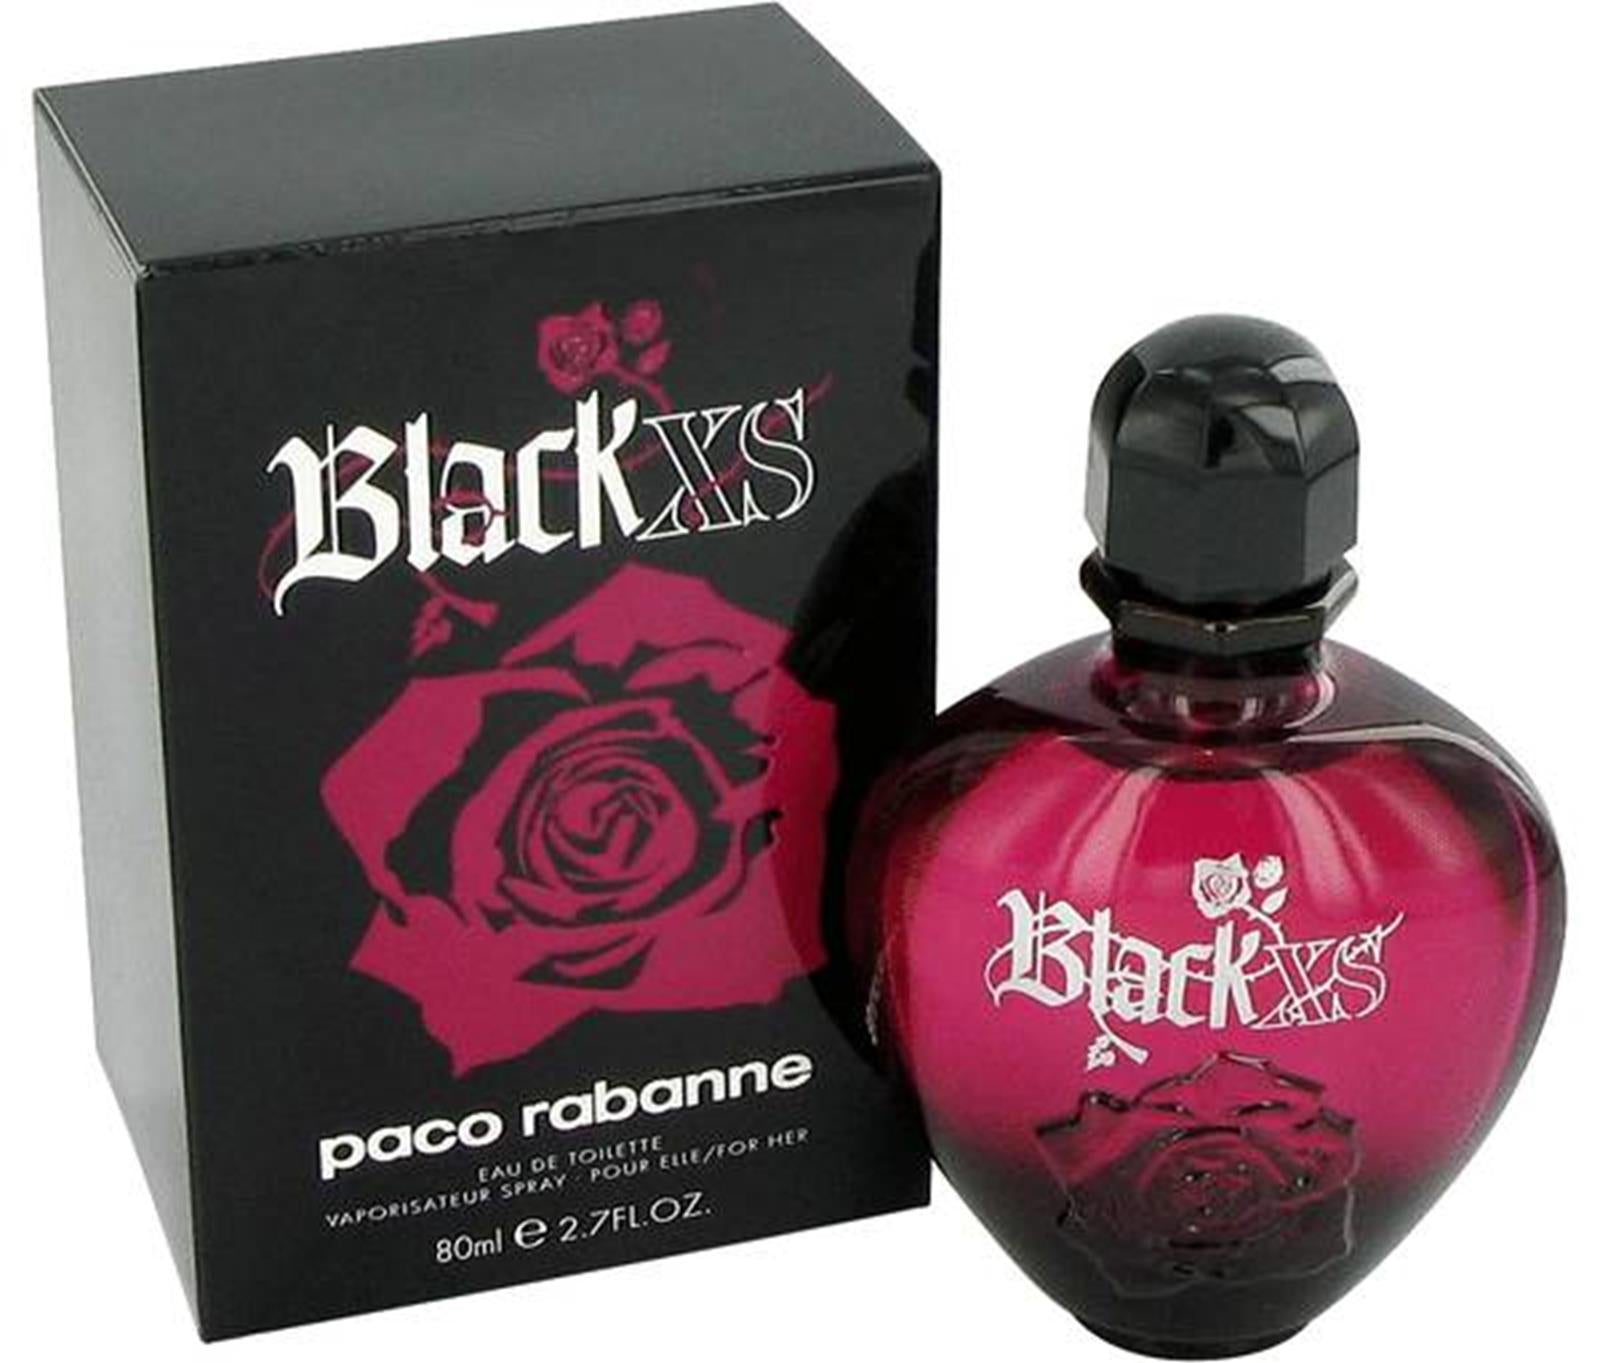 Paco rabanne xs женские. Paco Rabanne Black XS. Paco Rabanne Black XS pour femme. Black XS 80 ml. Paco Rabanne Black XS for women.